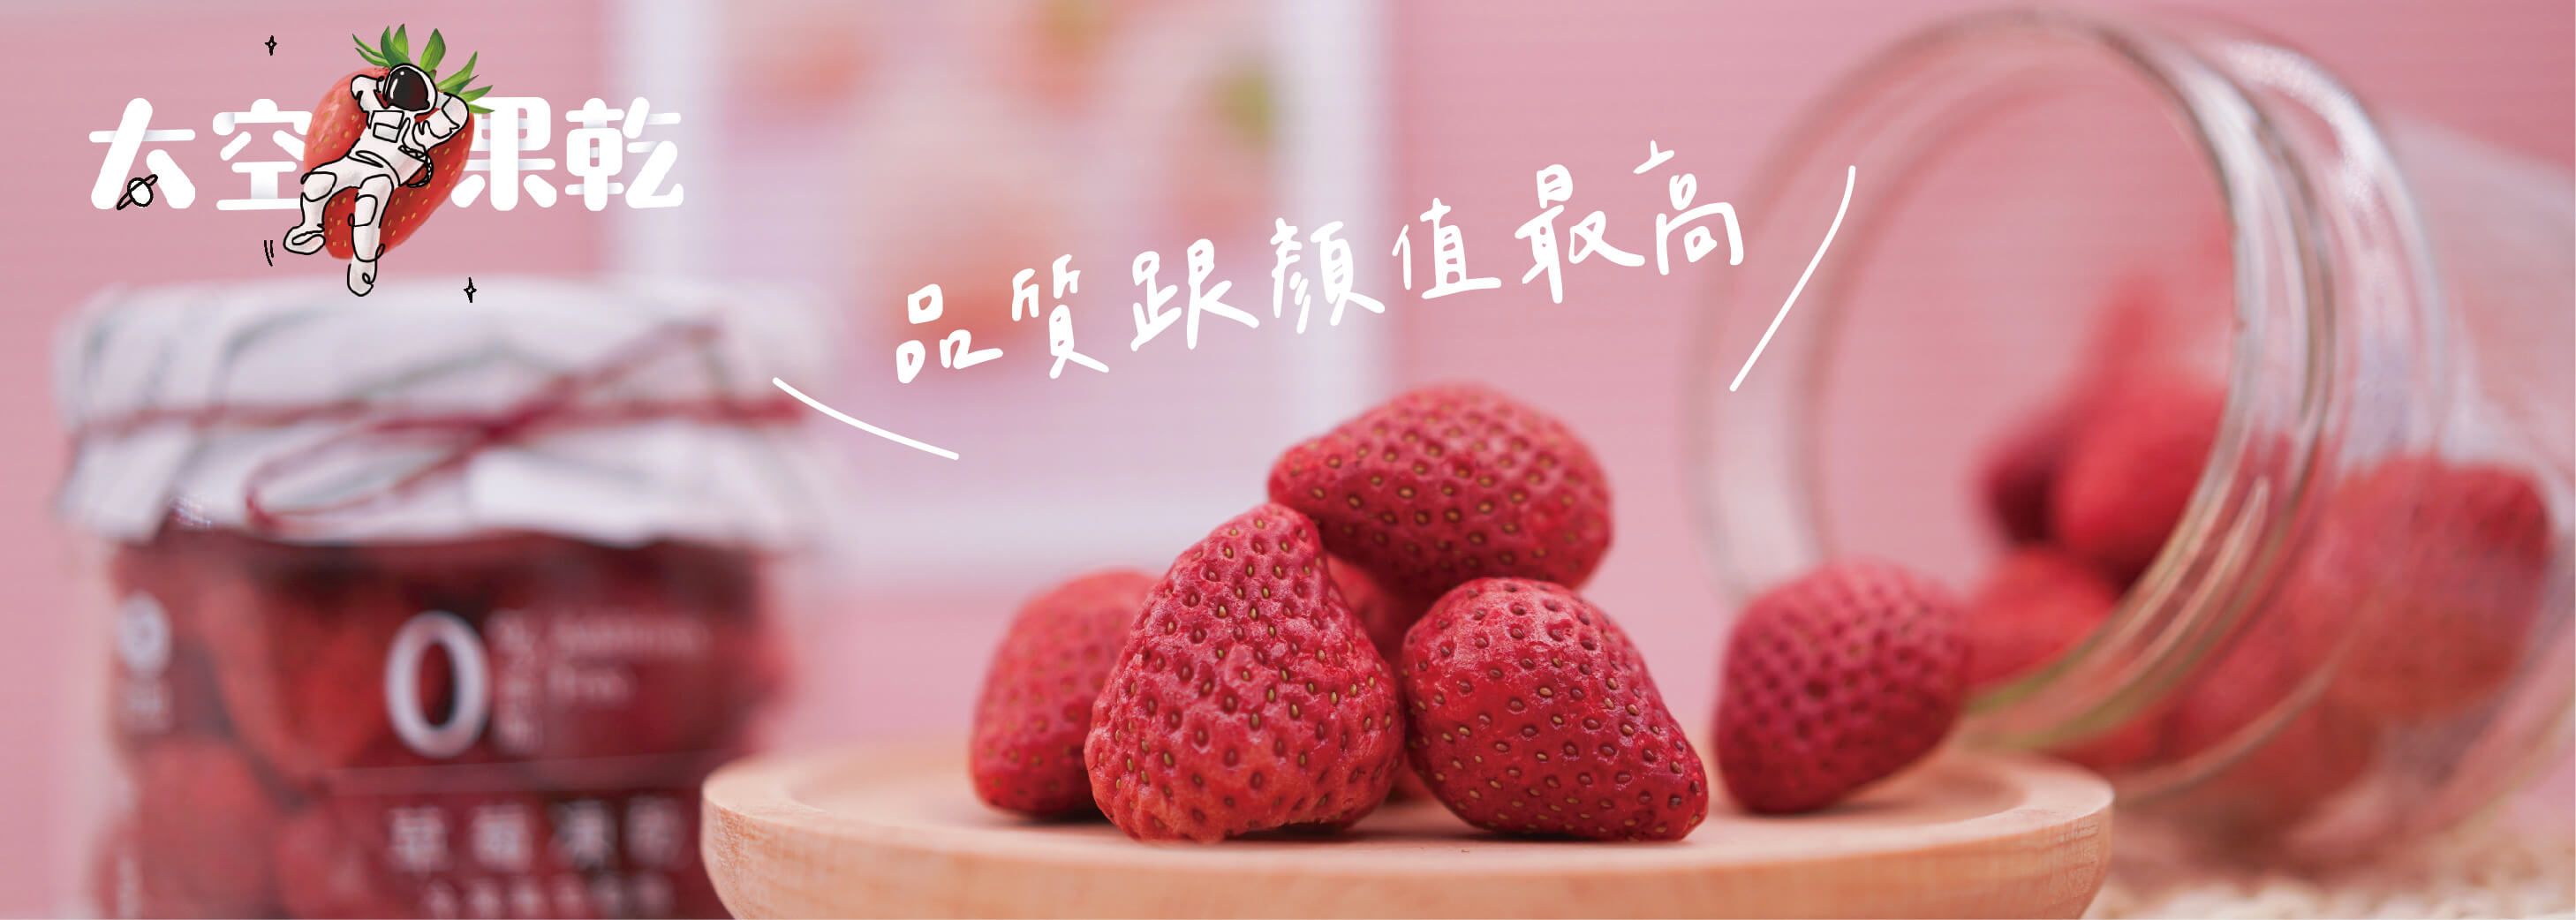 太空果乾#【我爸種的】太空果乾 國產草莓 零添加 冷凍乾燥